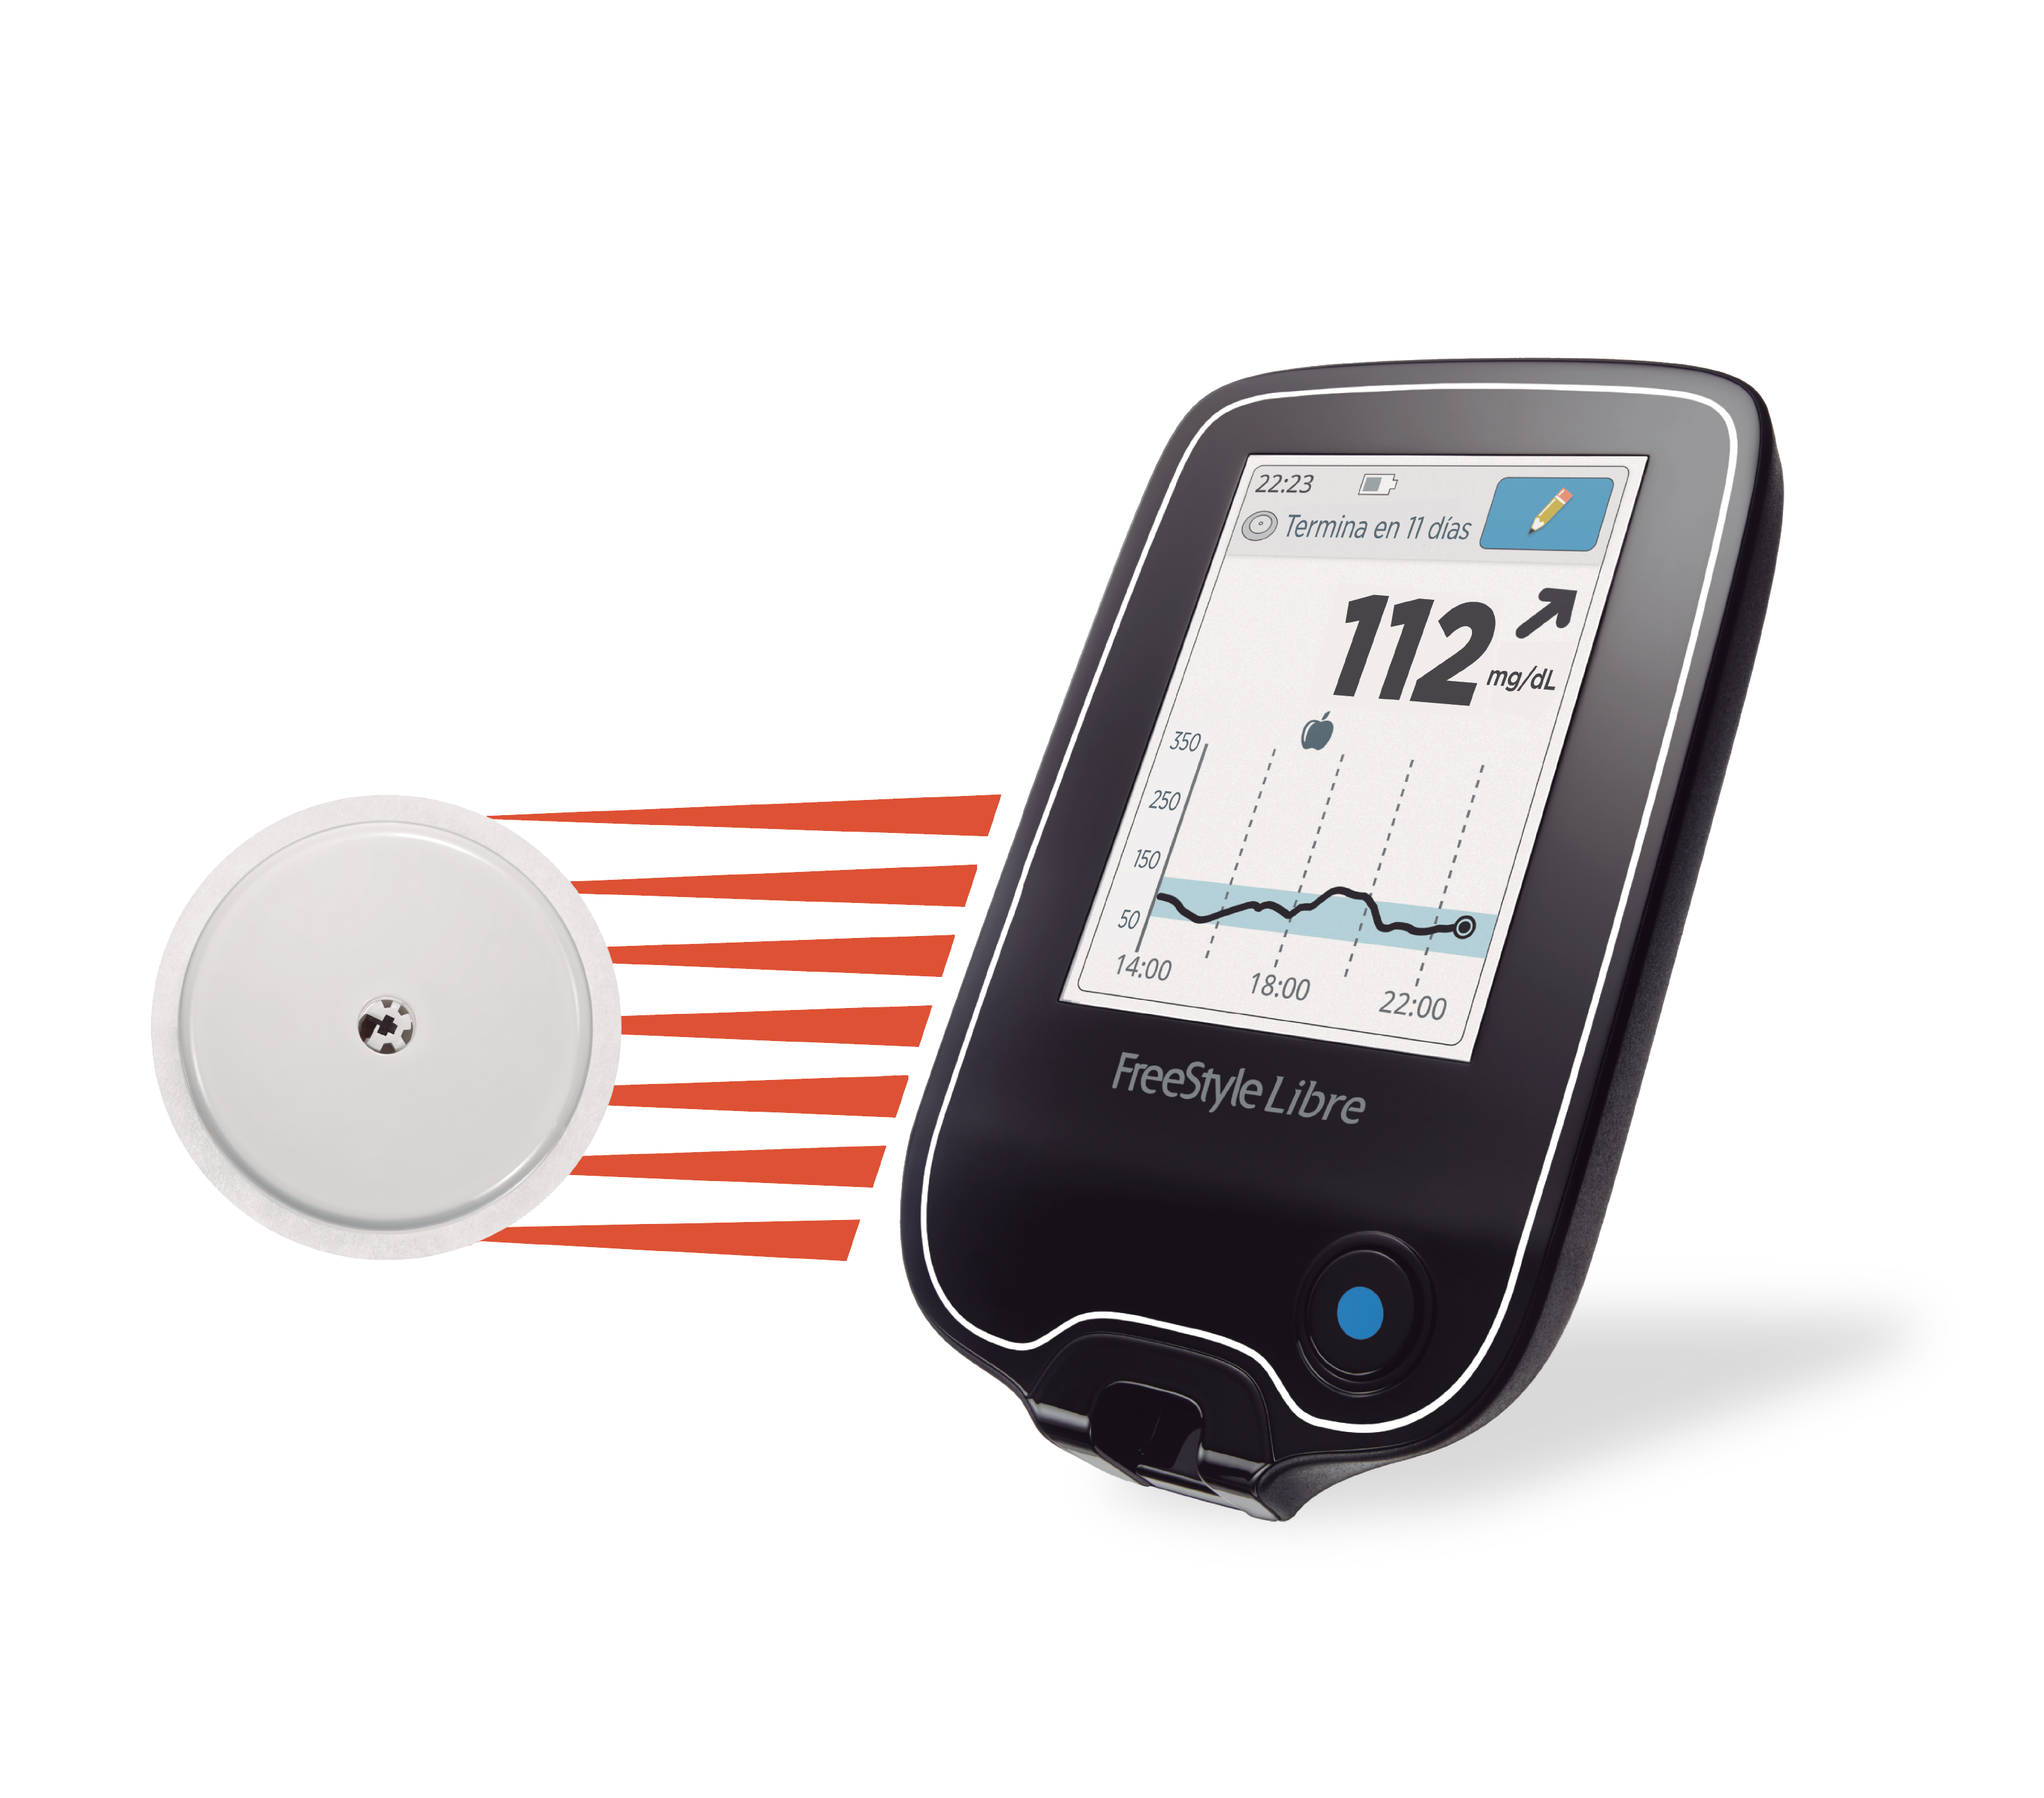 Sistema de Monitorización continua de glucosa ⇨ Controla tu Diabetes